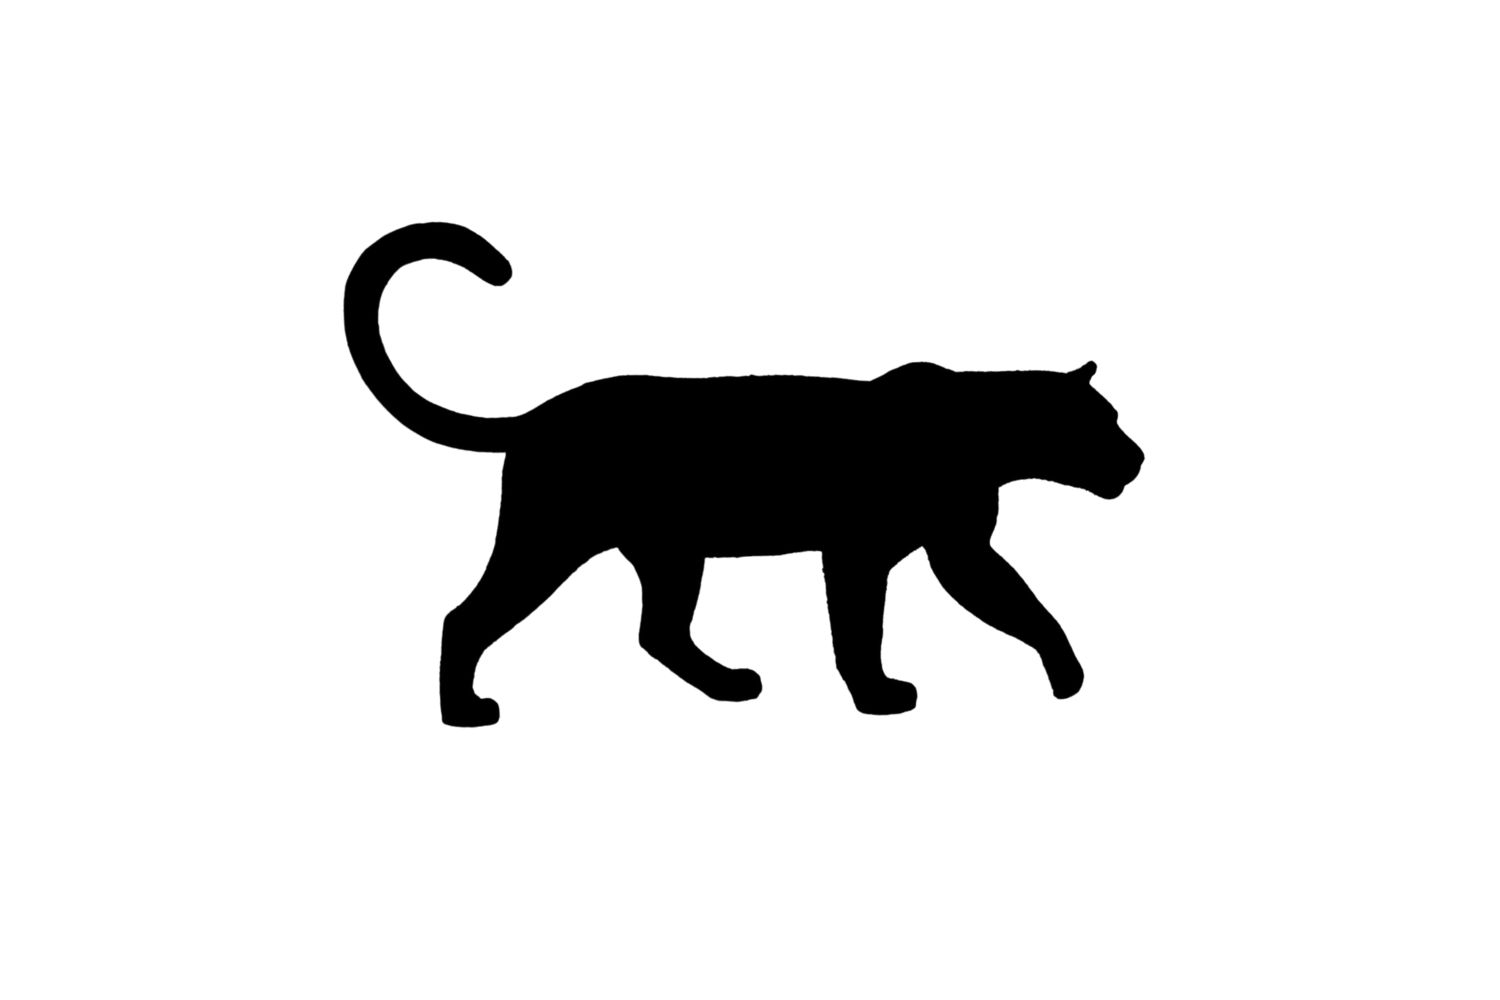 Leopard SVG Free Download